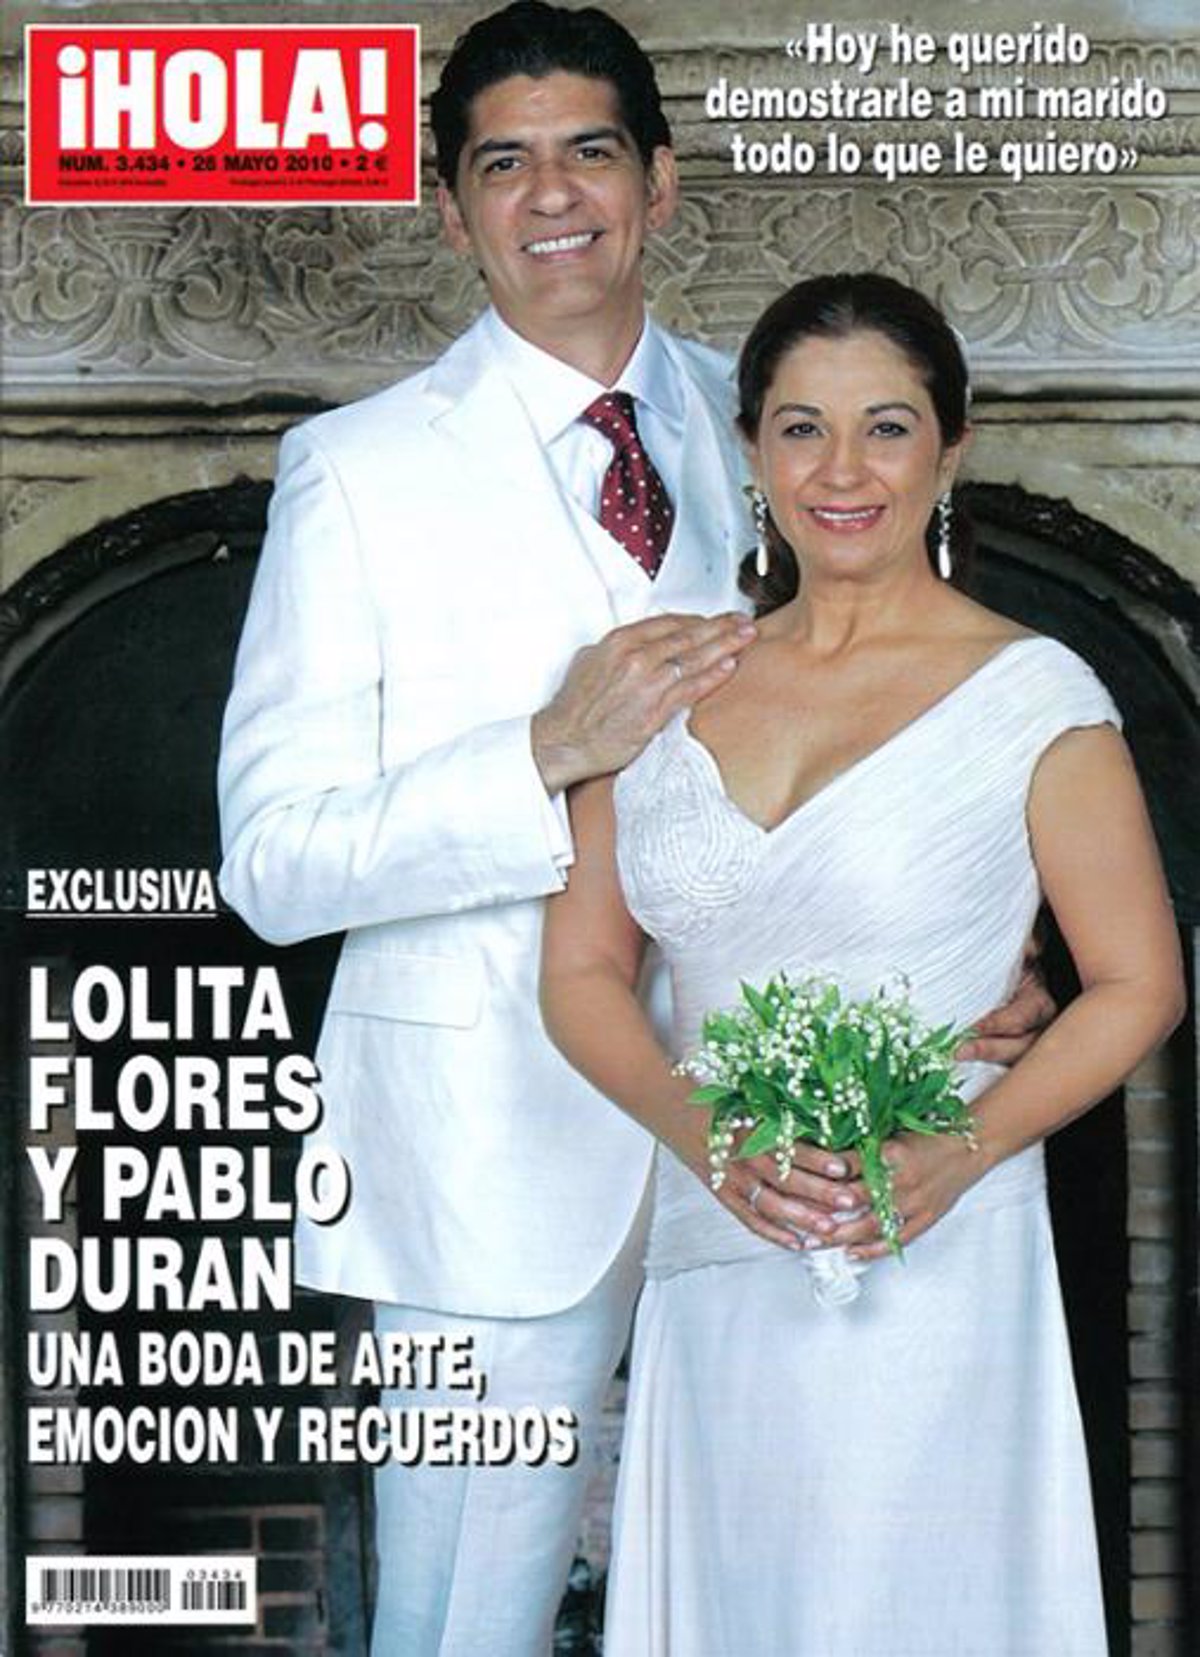 Lolita Flores y Pablo Durán, una boda de arte y muchos recuerdos